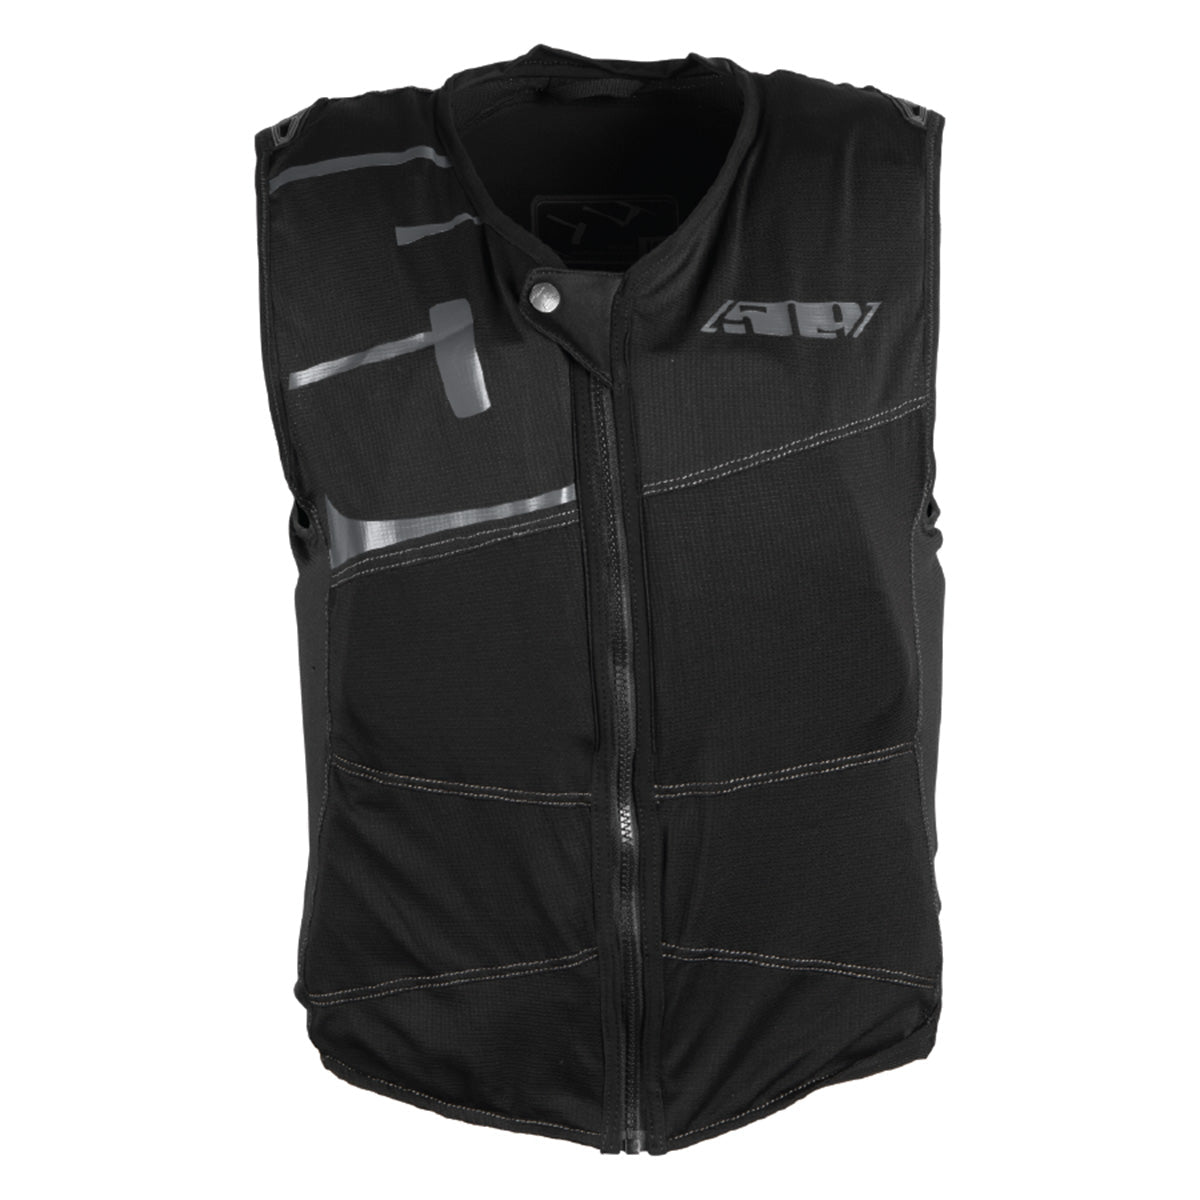 Motocross Protection & Body Armor